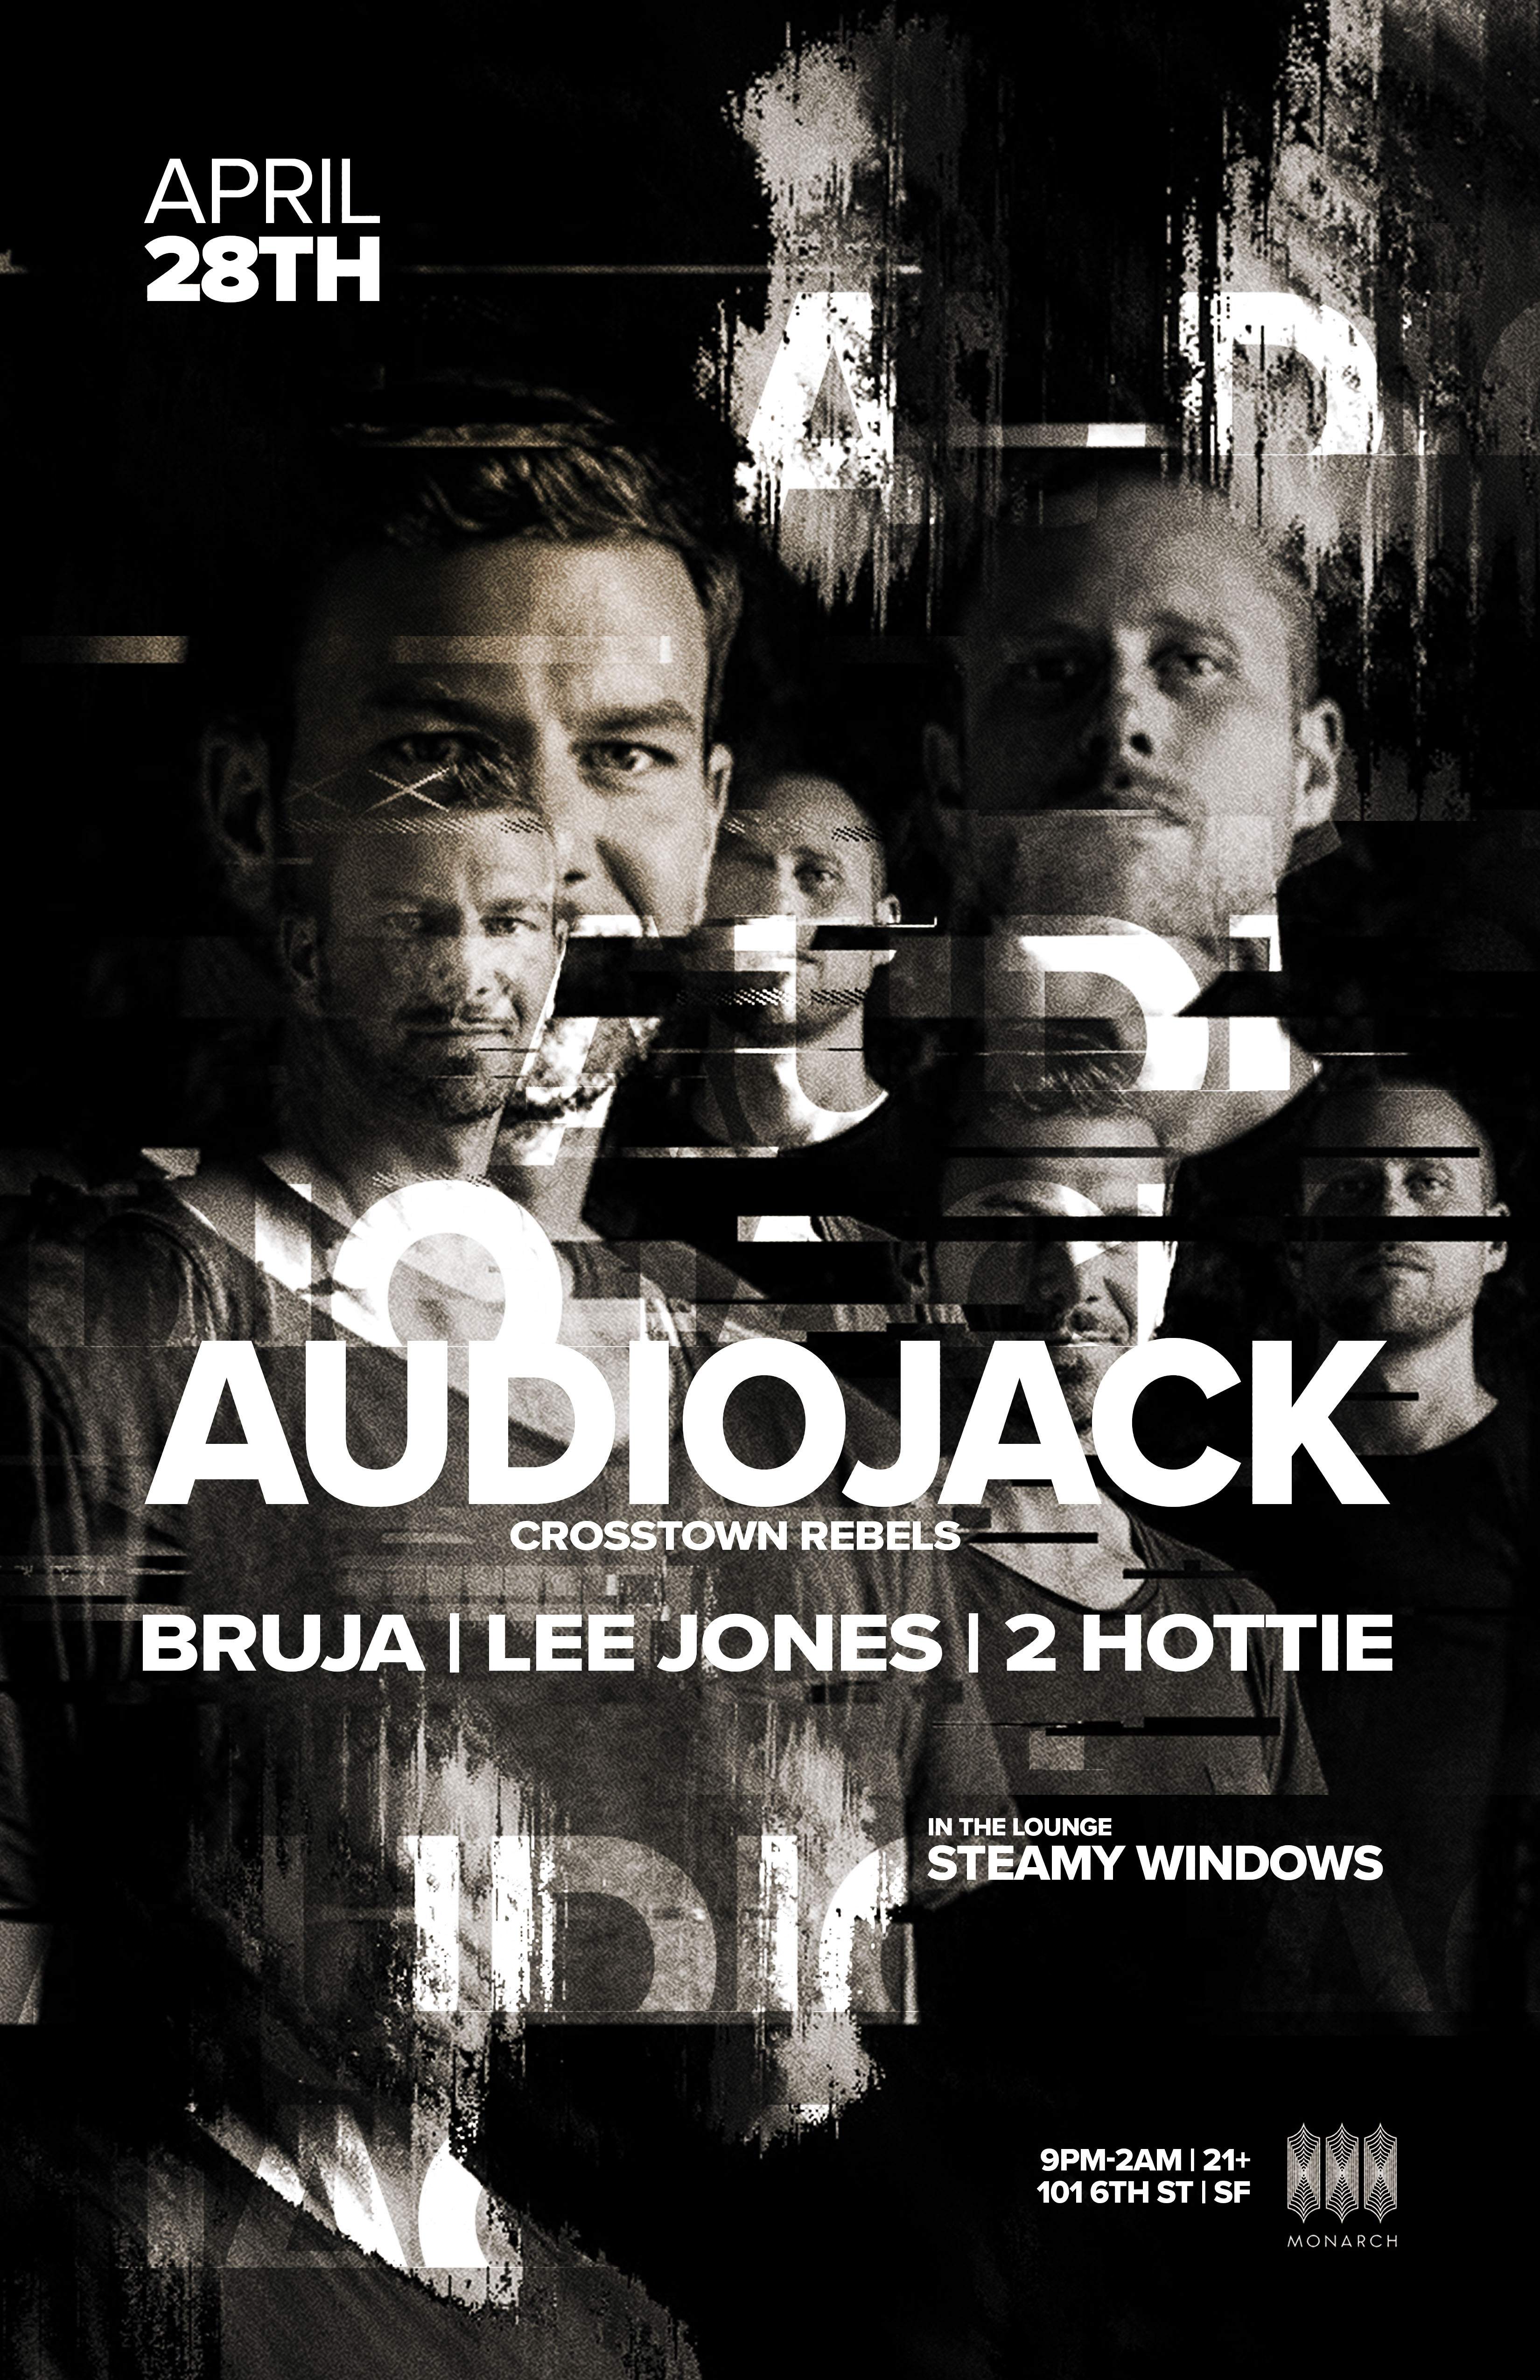 Audiojack (Crosstown Rebels) - Bruja - Lee Jones - 2 Hottie - フライヤー表